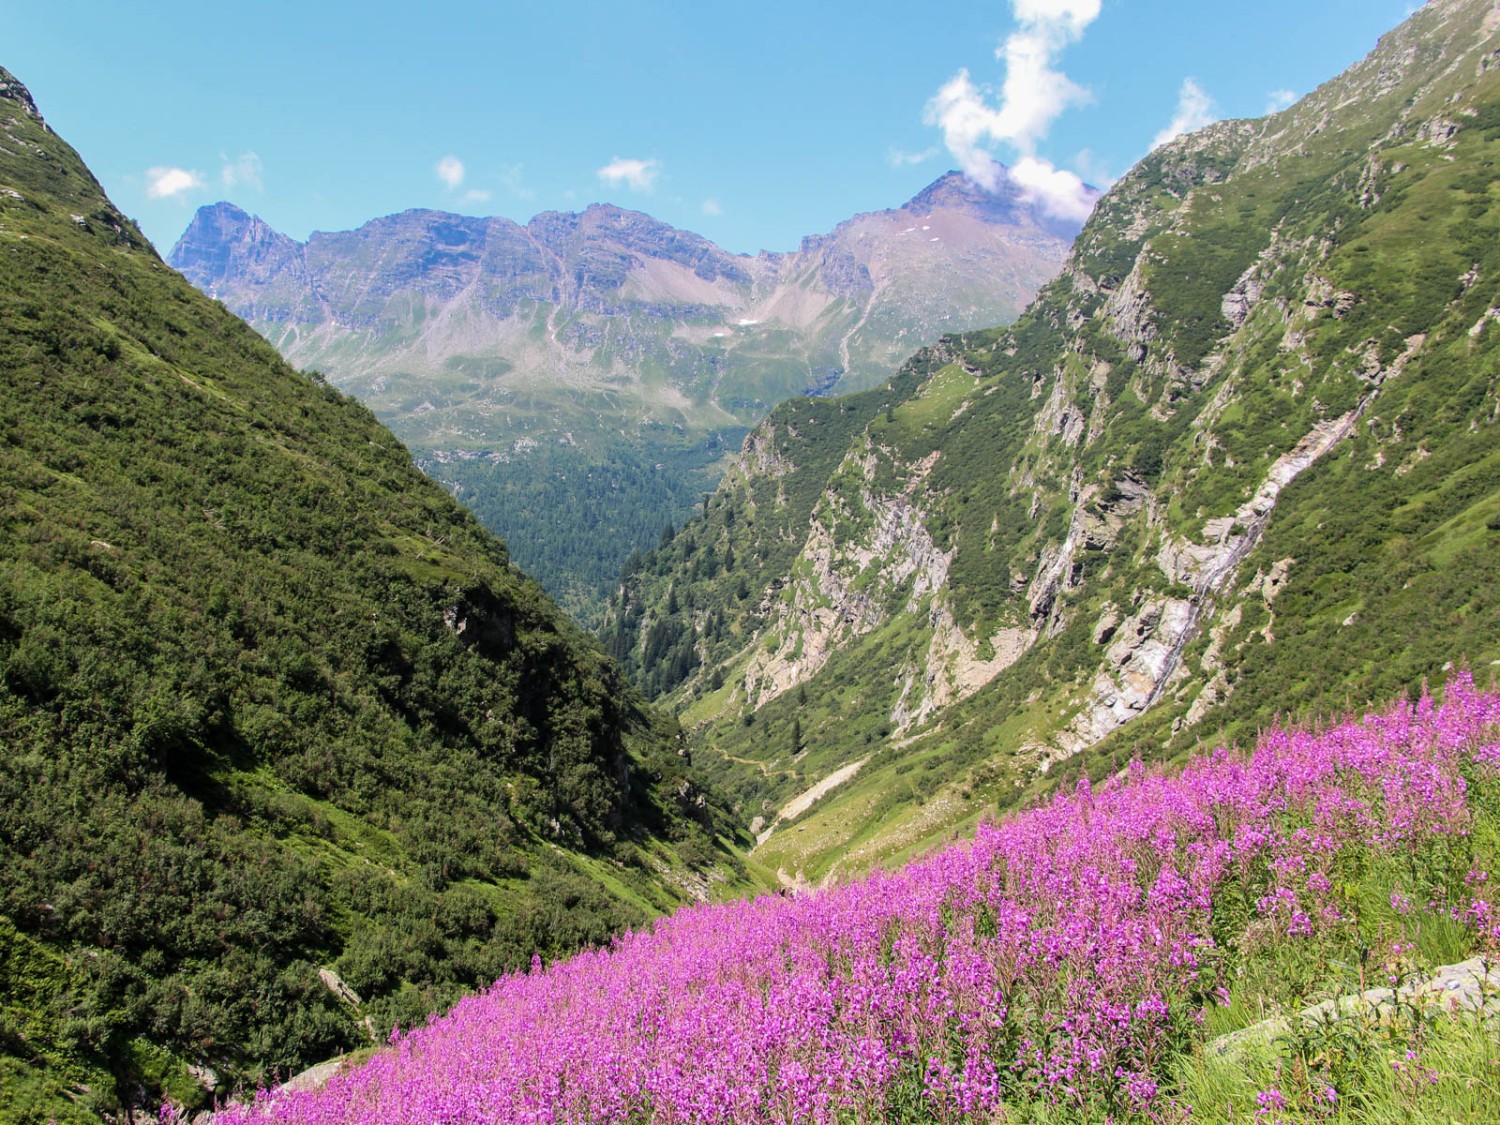 Près de l’alpage d’Alögna, le paysage rappelle les montagnes Rocheuses. Photo: Alexandra Blatter